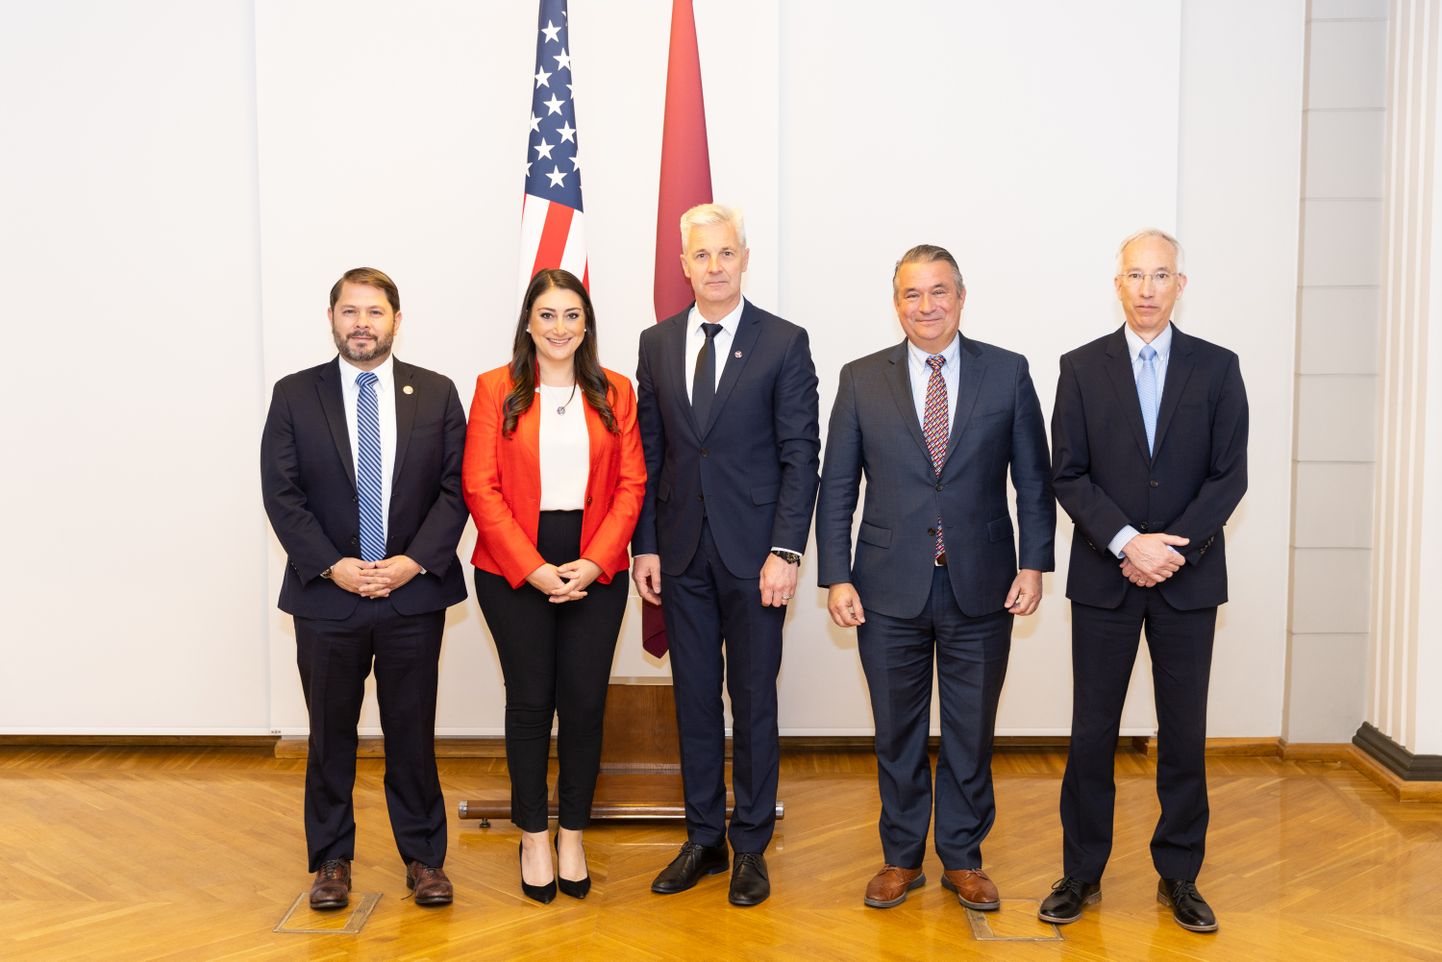 Pirmdien, 23. maijā, Latvijas aizsardzības ministrs Artis Pabriks tikās ar ASV Kongresa pārstāvjiem Donu Beikonu, Rubenu Gajego un Sāru Džeikobsu